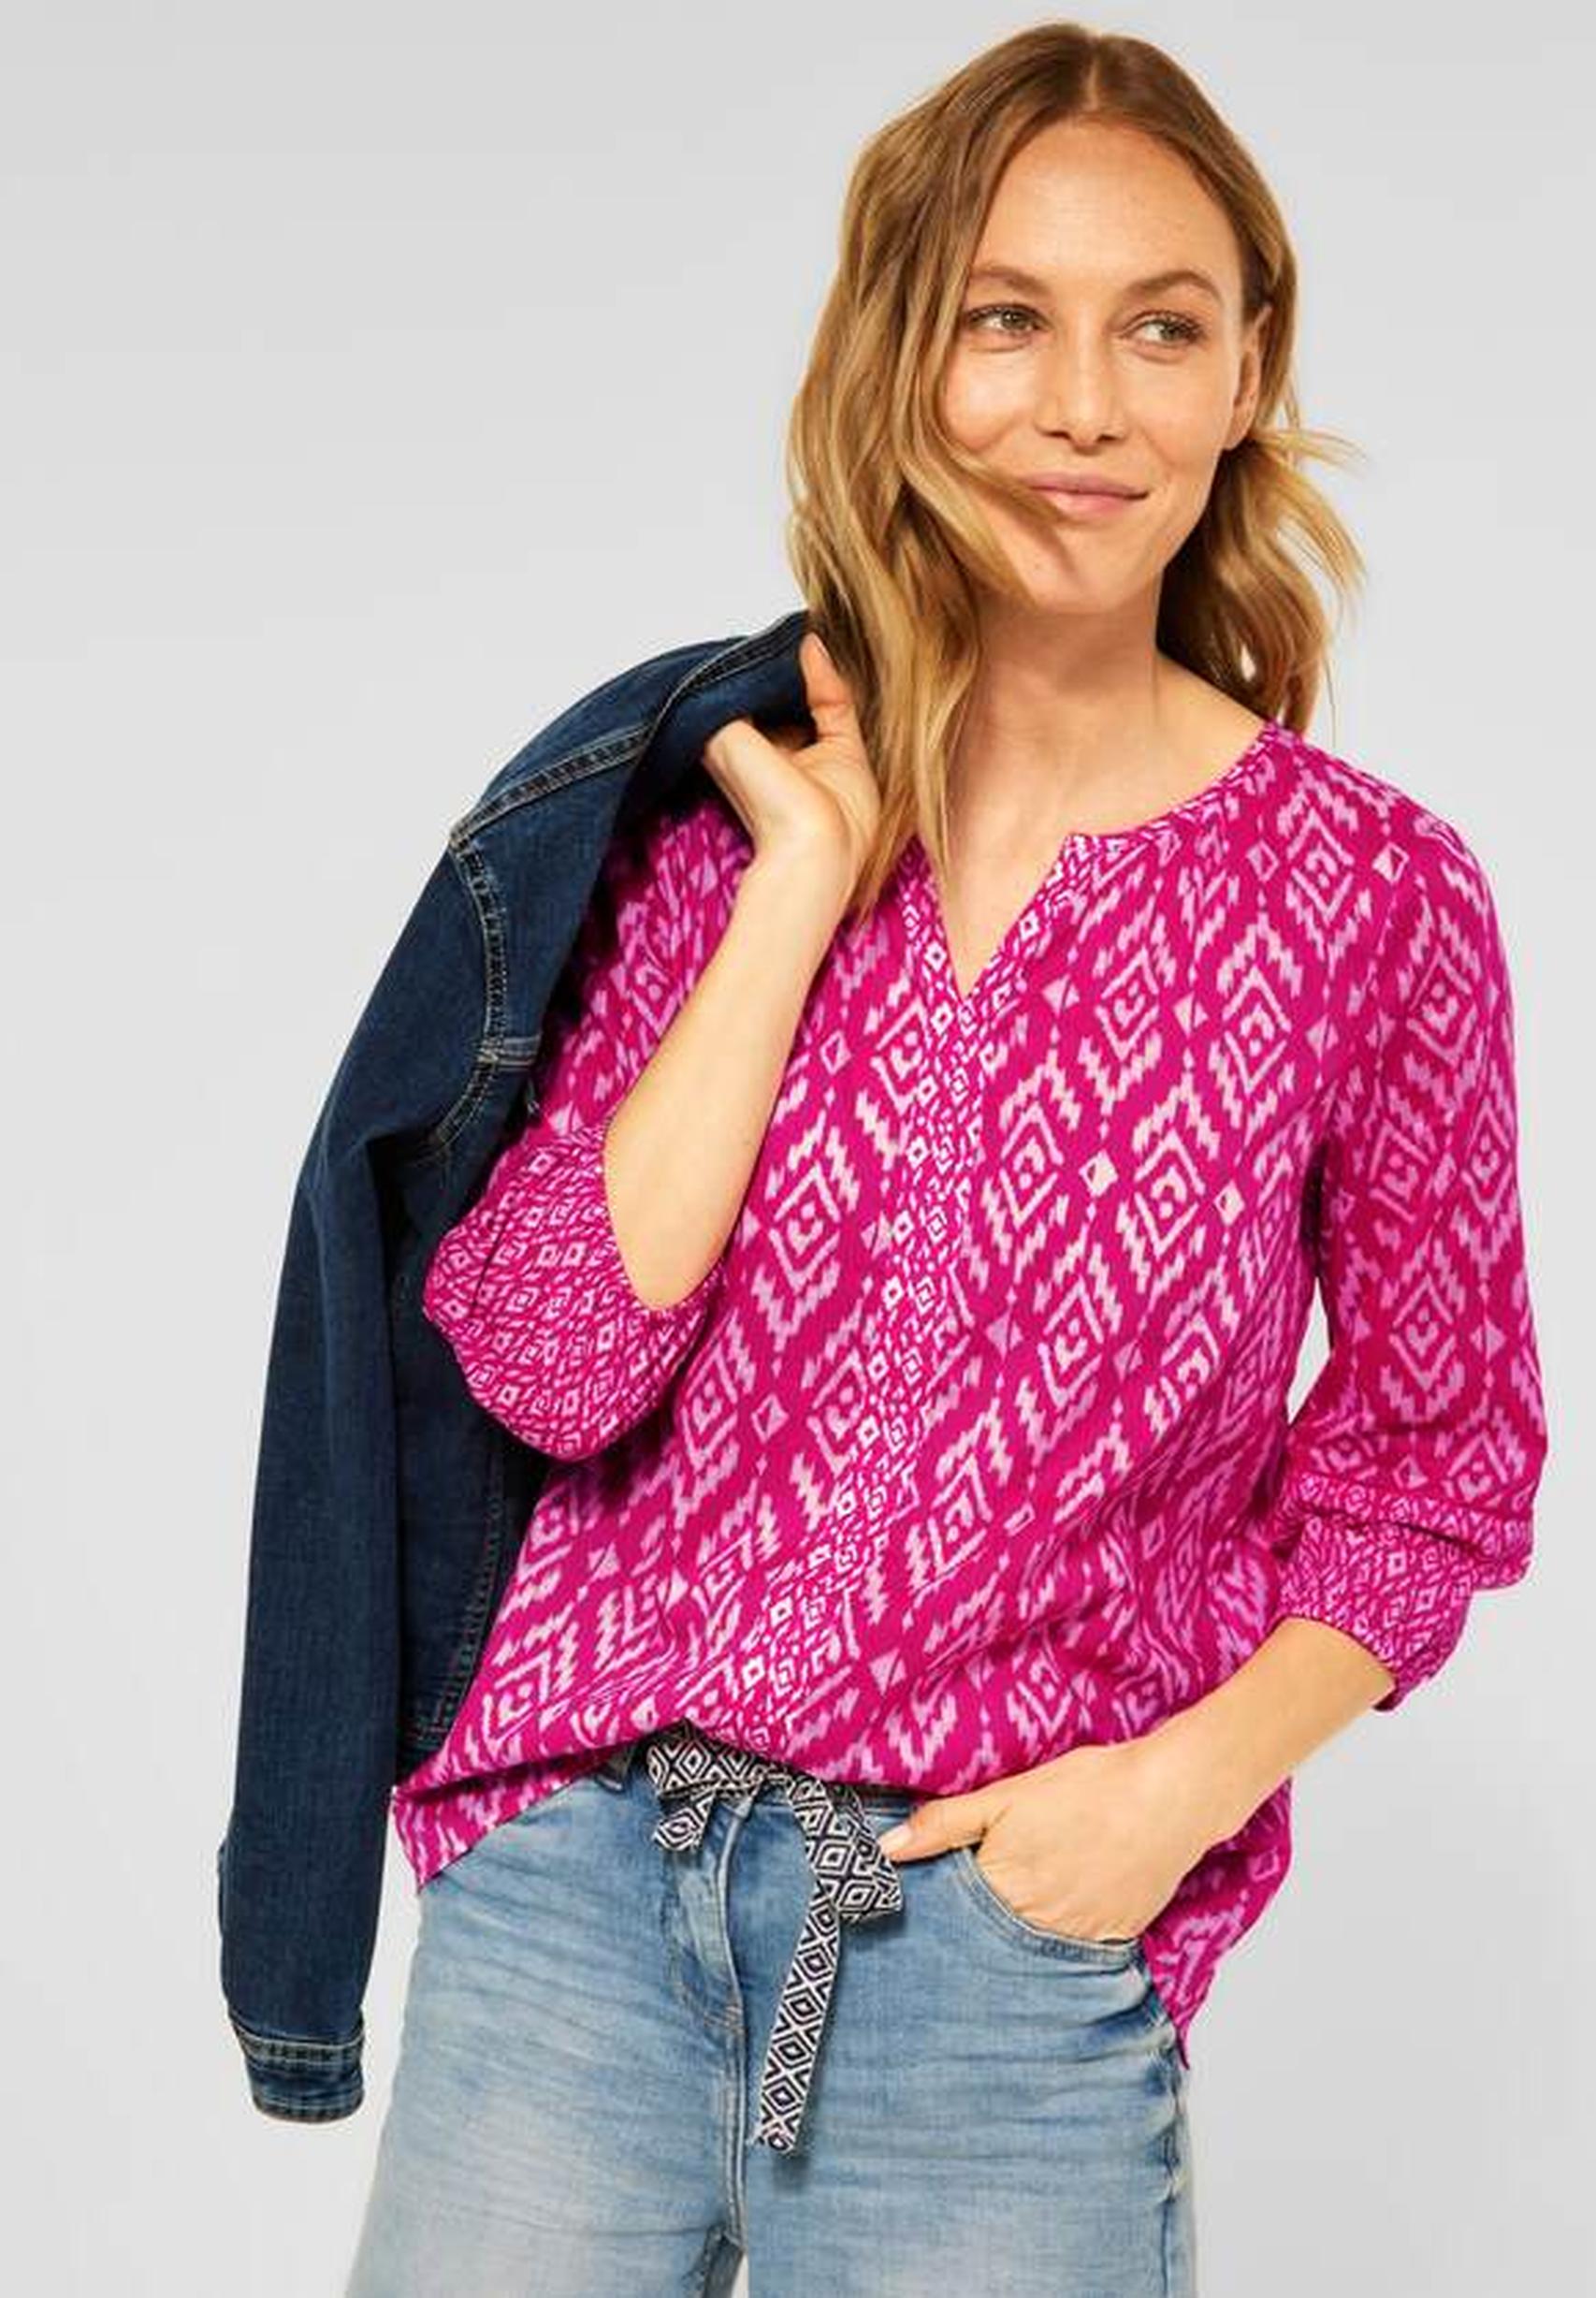 Modische Bluse aus der Kollektion 343270 in Pink CECIL Raspberry von